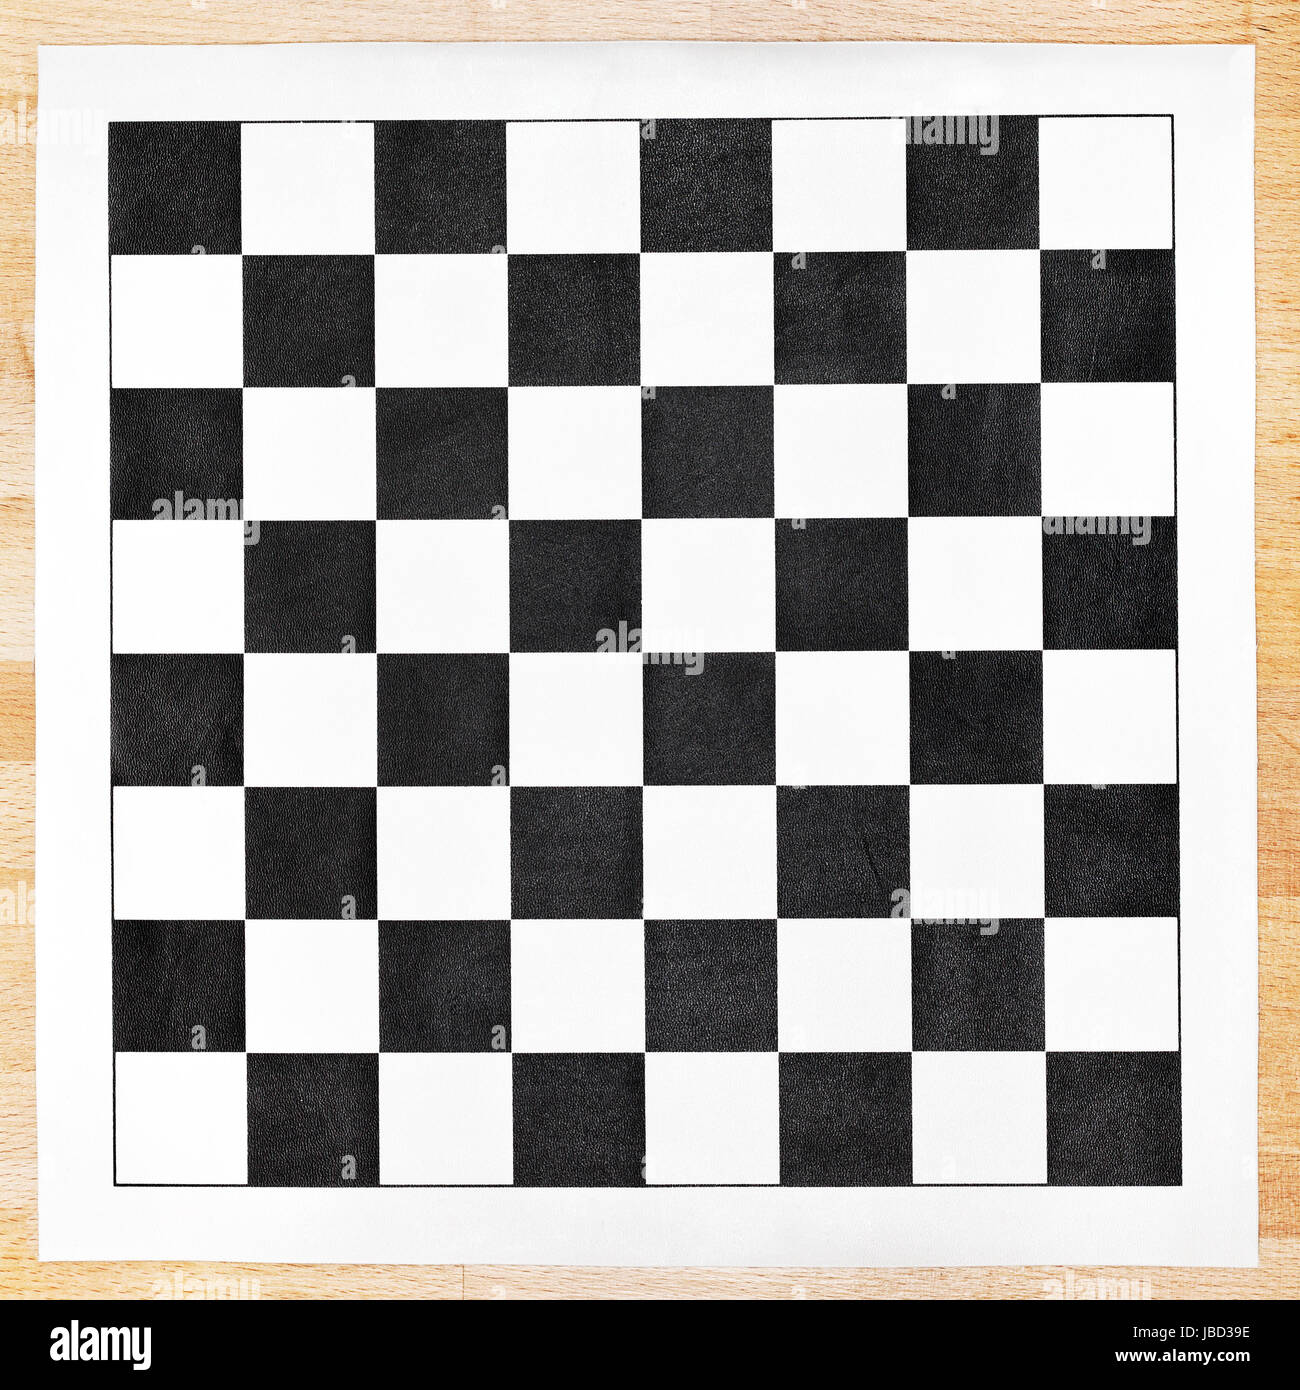 На шахматной доске 64 клетки. Шахматная доска виниловая. Тетрадь с шахматным поле. Black and White шахматная доска. Принт шахматы для печати.